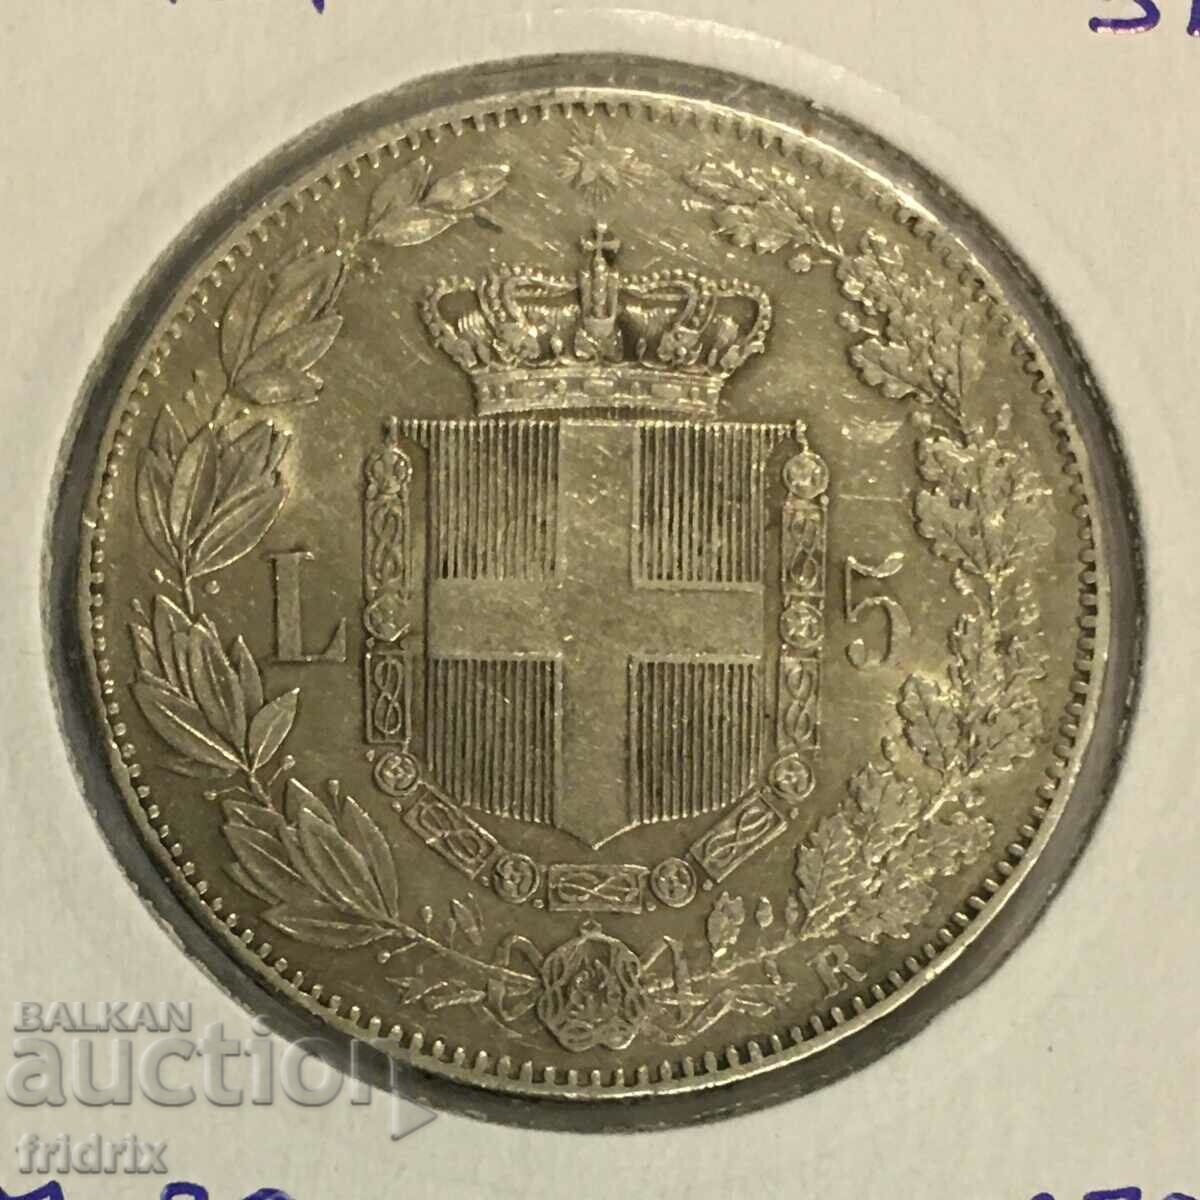 Italy 5 lira 1879 R / Italy 5 lira 1879 R